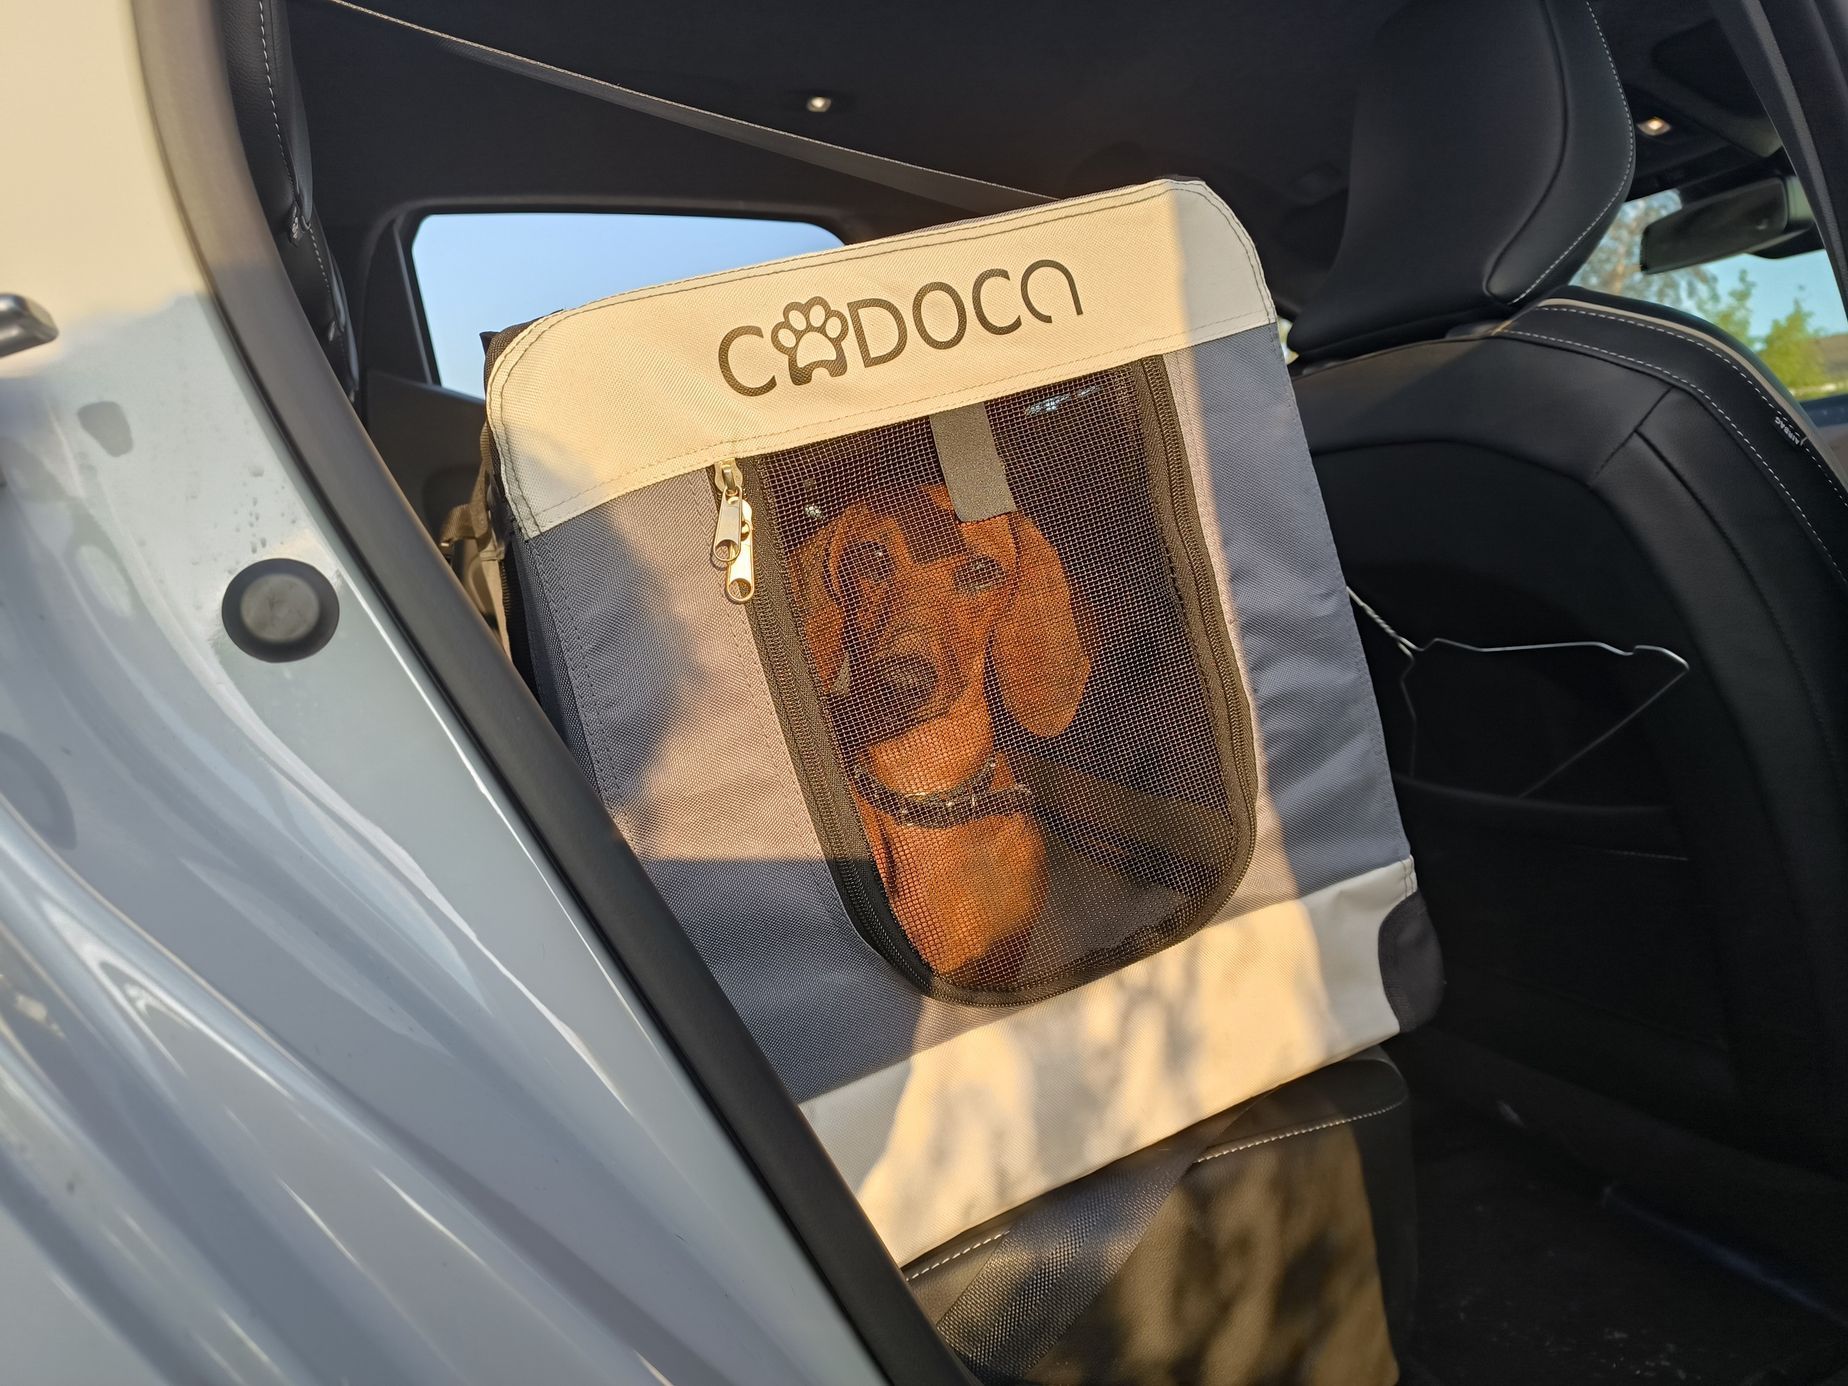 Pes v autě, dovolená se psem, pes jízda zahraničí